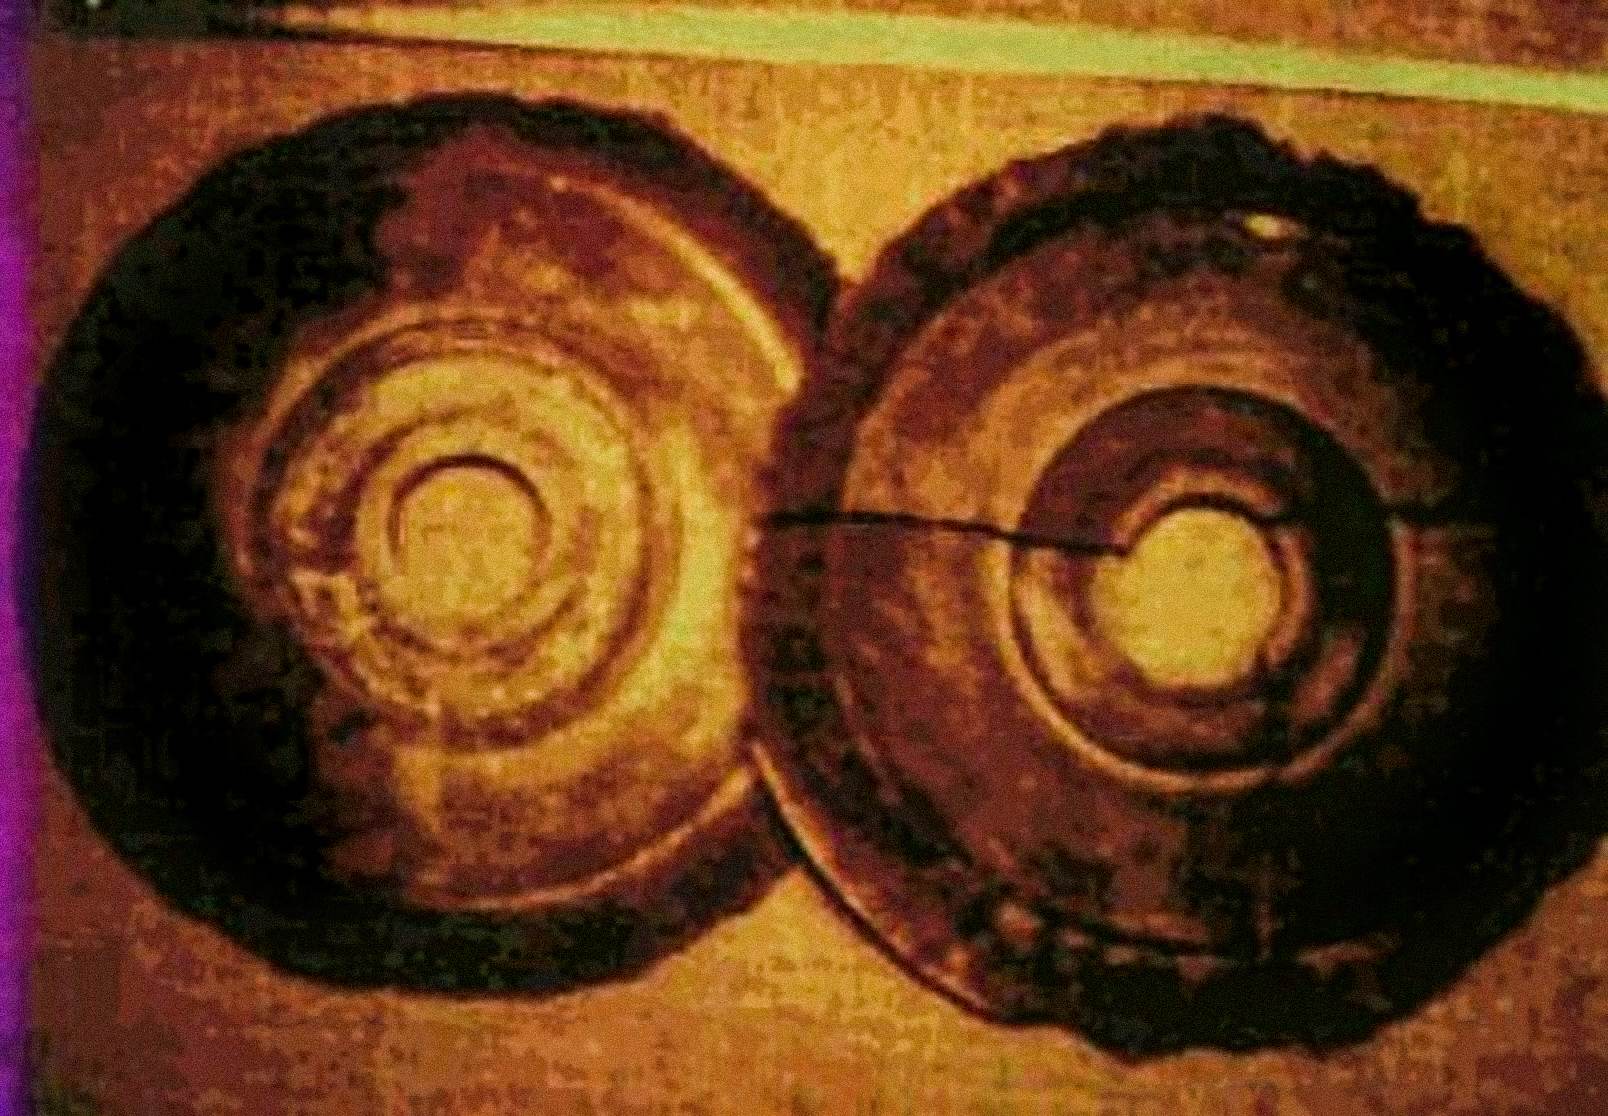 Leta 1974 je Ernst Wegerer, avstrijski inženir, fotografiral dva diska, ki sta ustrezala opisom Dropa Stones. Bil je na vodenem ogledu muzeja Banpo v Xianu, ko je videl razstavljene kamnite plošče. Trdi, da je videl luknjo v središču vsakega diska in hieroglife v delno zdrobljenih spiralastih utorih.